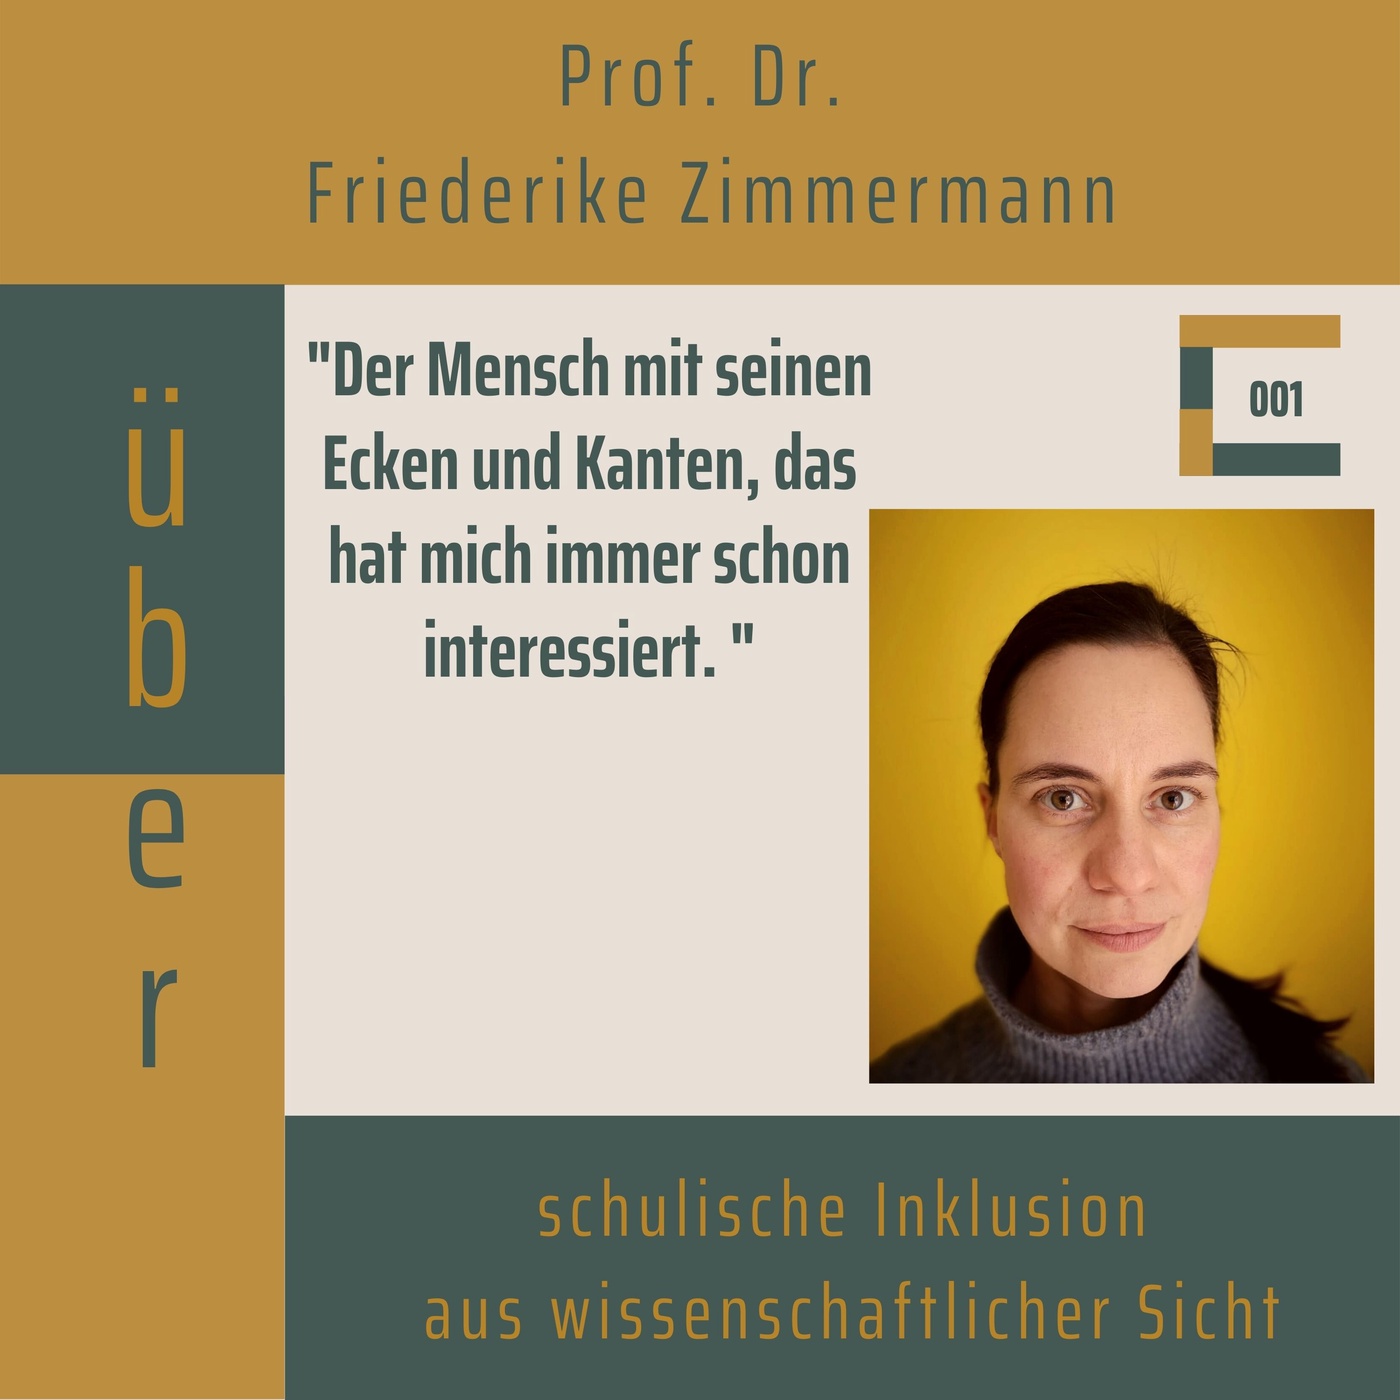 Folge 001: Prof. Dr. Friederike Zimmermann über schulische Inklusion aus wissenschaftlicher Sicht